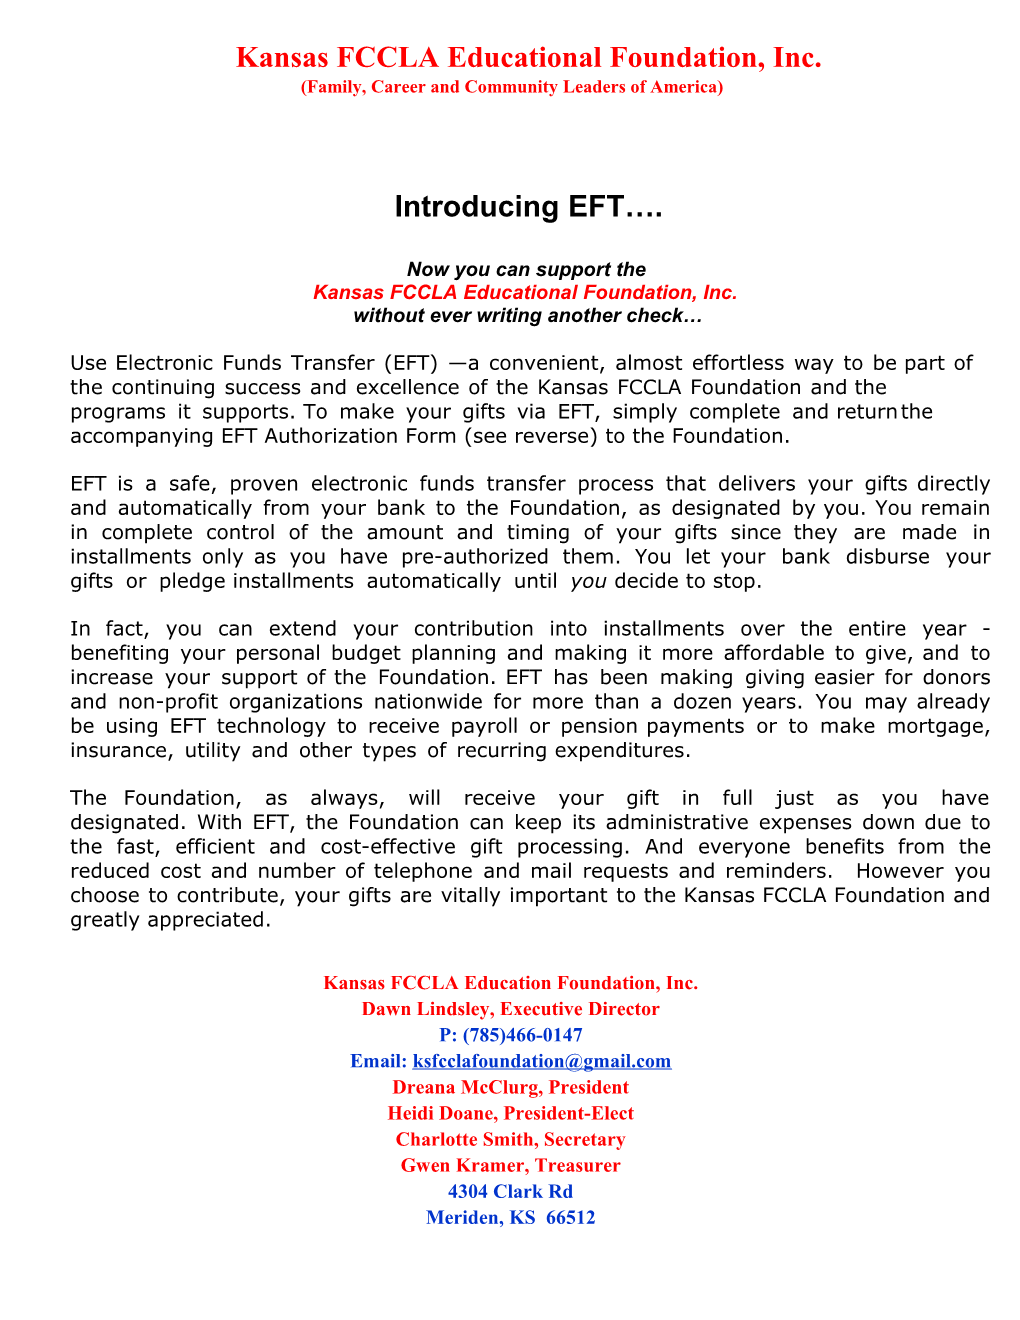 FFA Foundation EFT Program 03.08.06 1